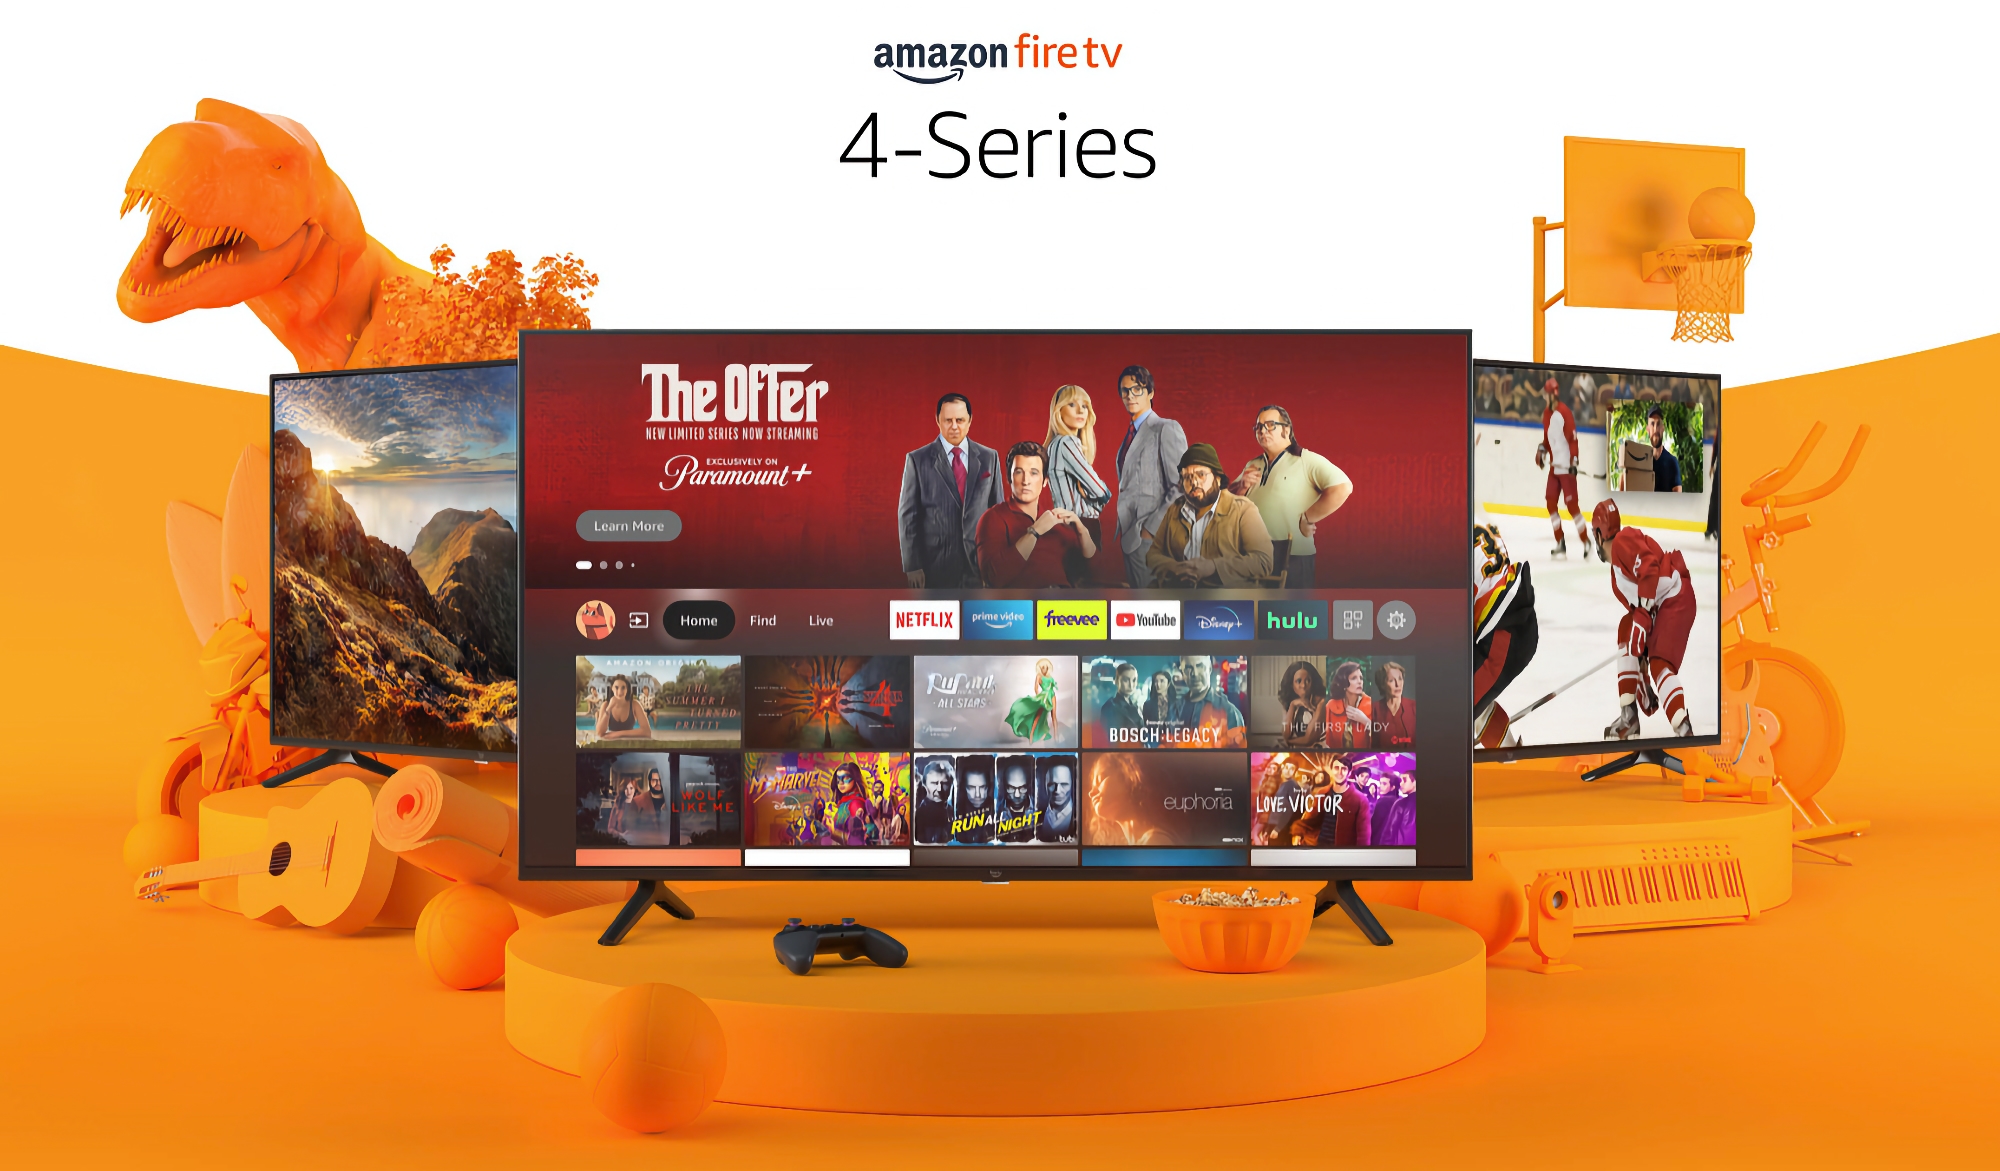 Amazon Fire TV con 55 pulgadas, resolución 4K y Alexa integrado está disponible a un precio rebajado de 180 dólares